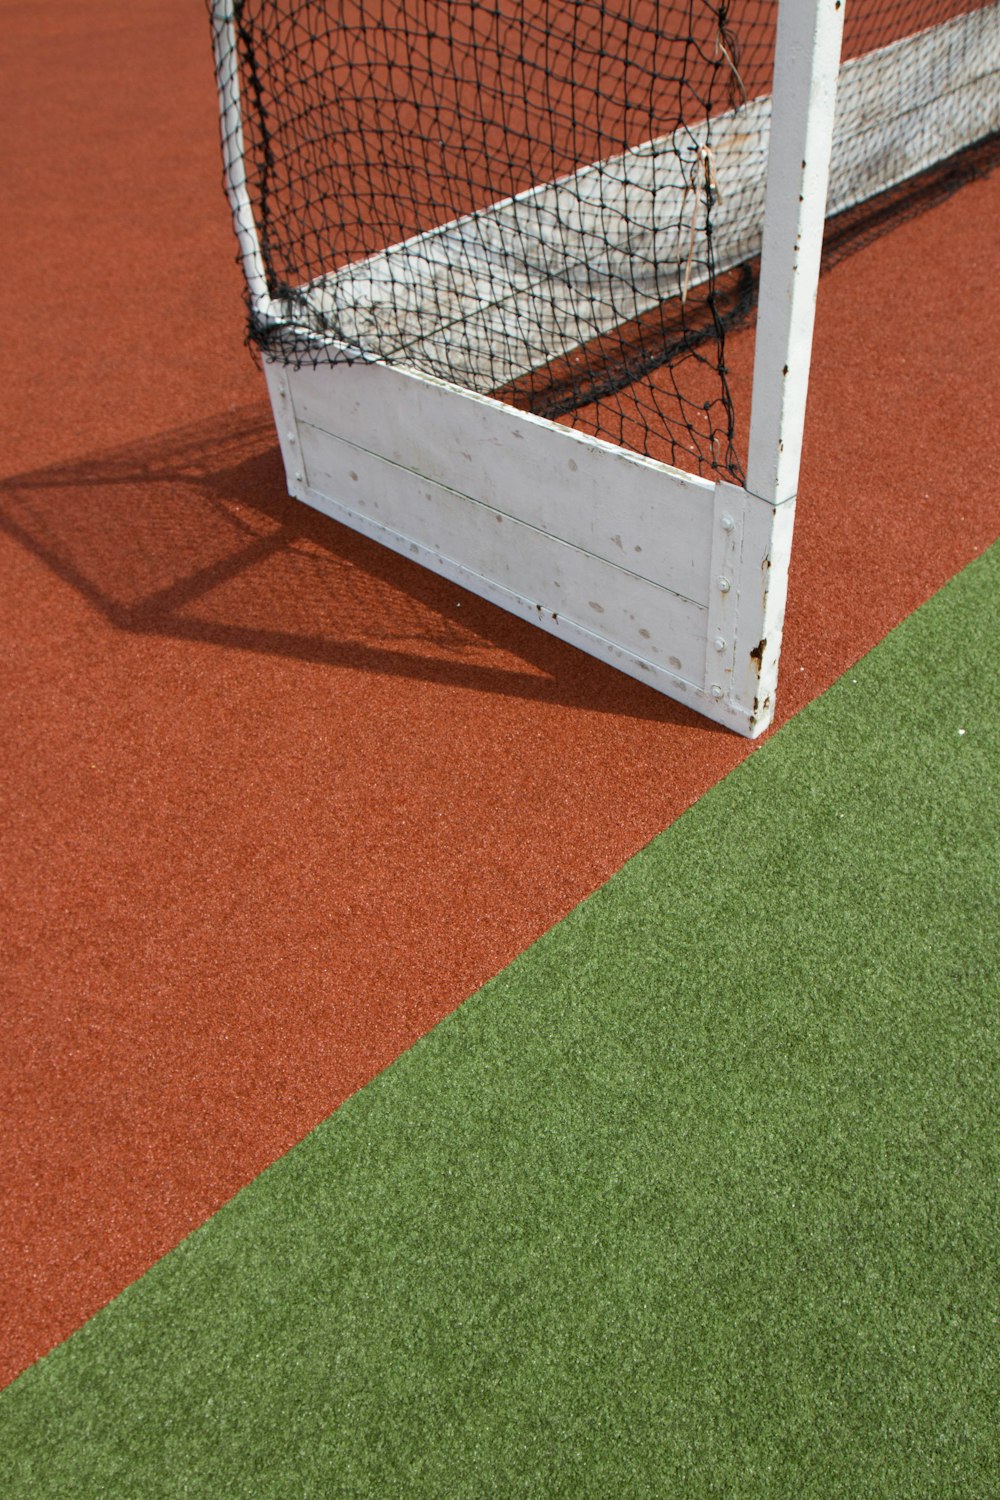 a close up of a tennis net on a court